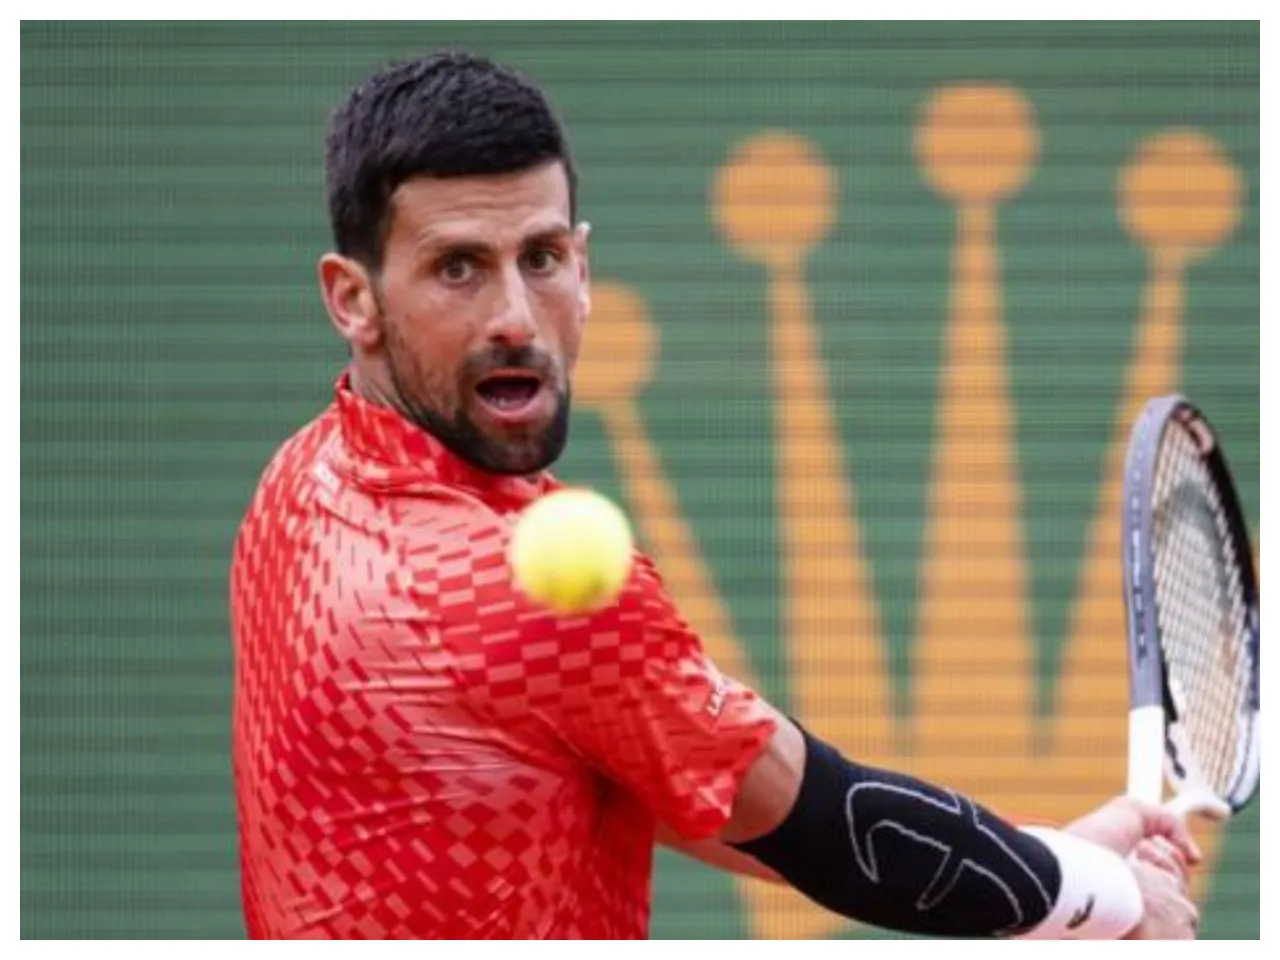 Novak Djokovic : মাদ্রিদ মাস্টার্সে খেলবেন না জোকোভিচ